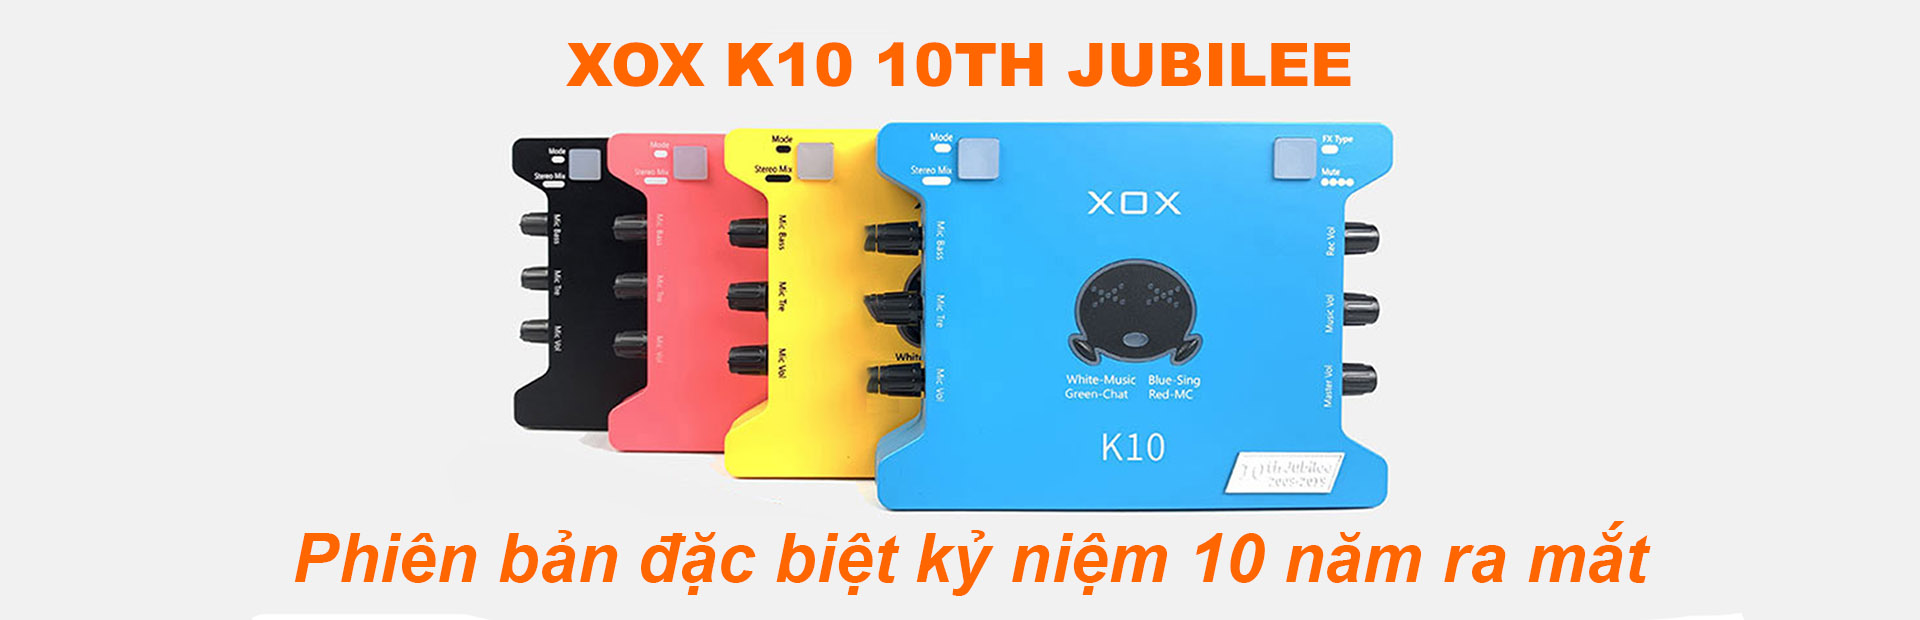 Sound card XOX K10 10th Jubilee 2020 trong bộ mic thu âm livestream